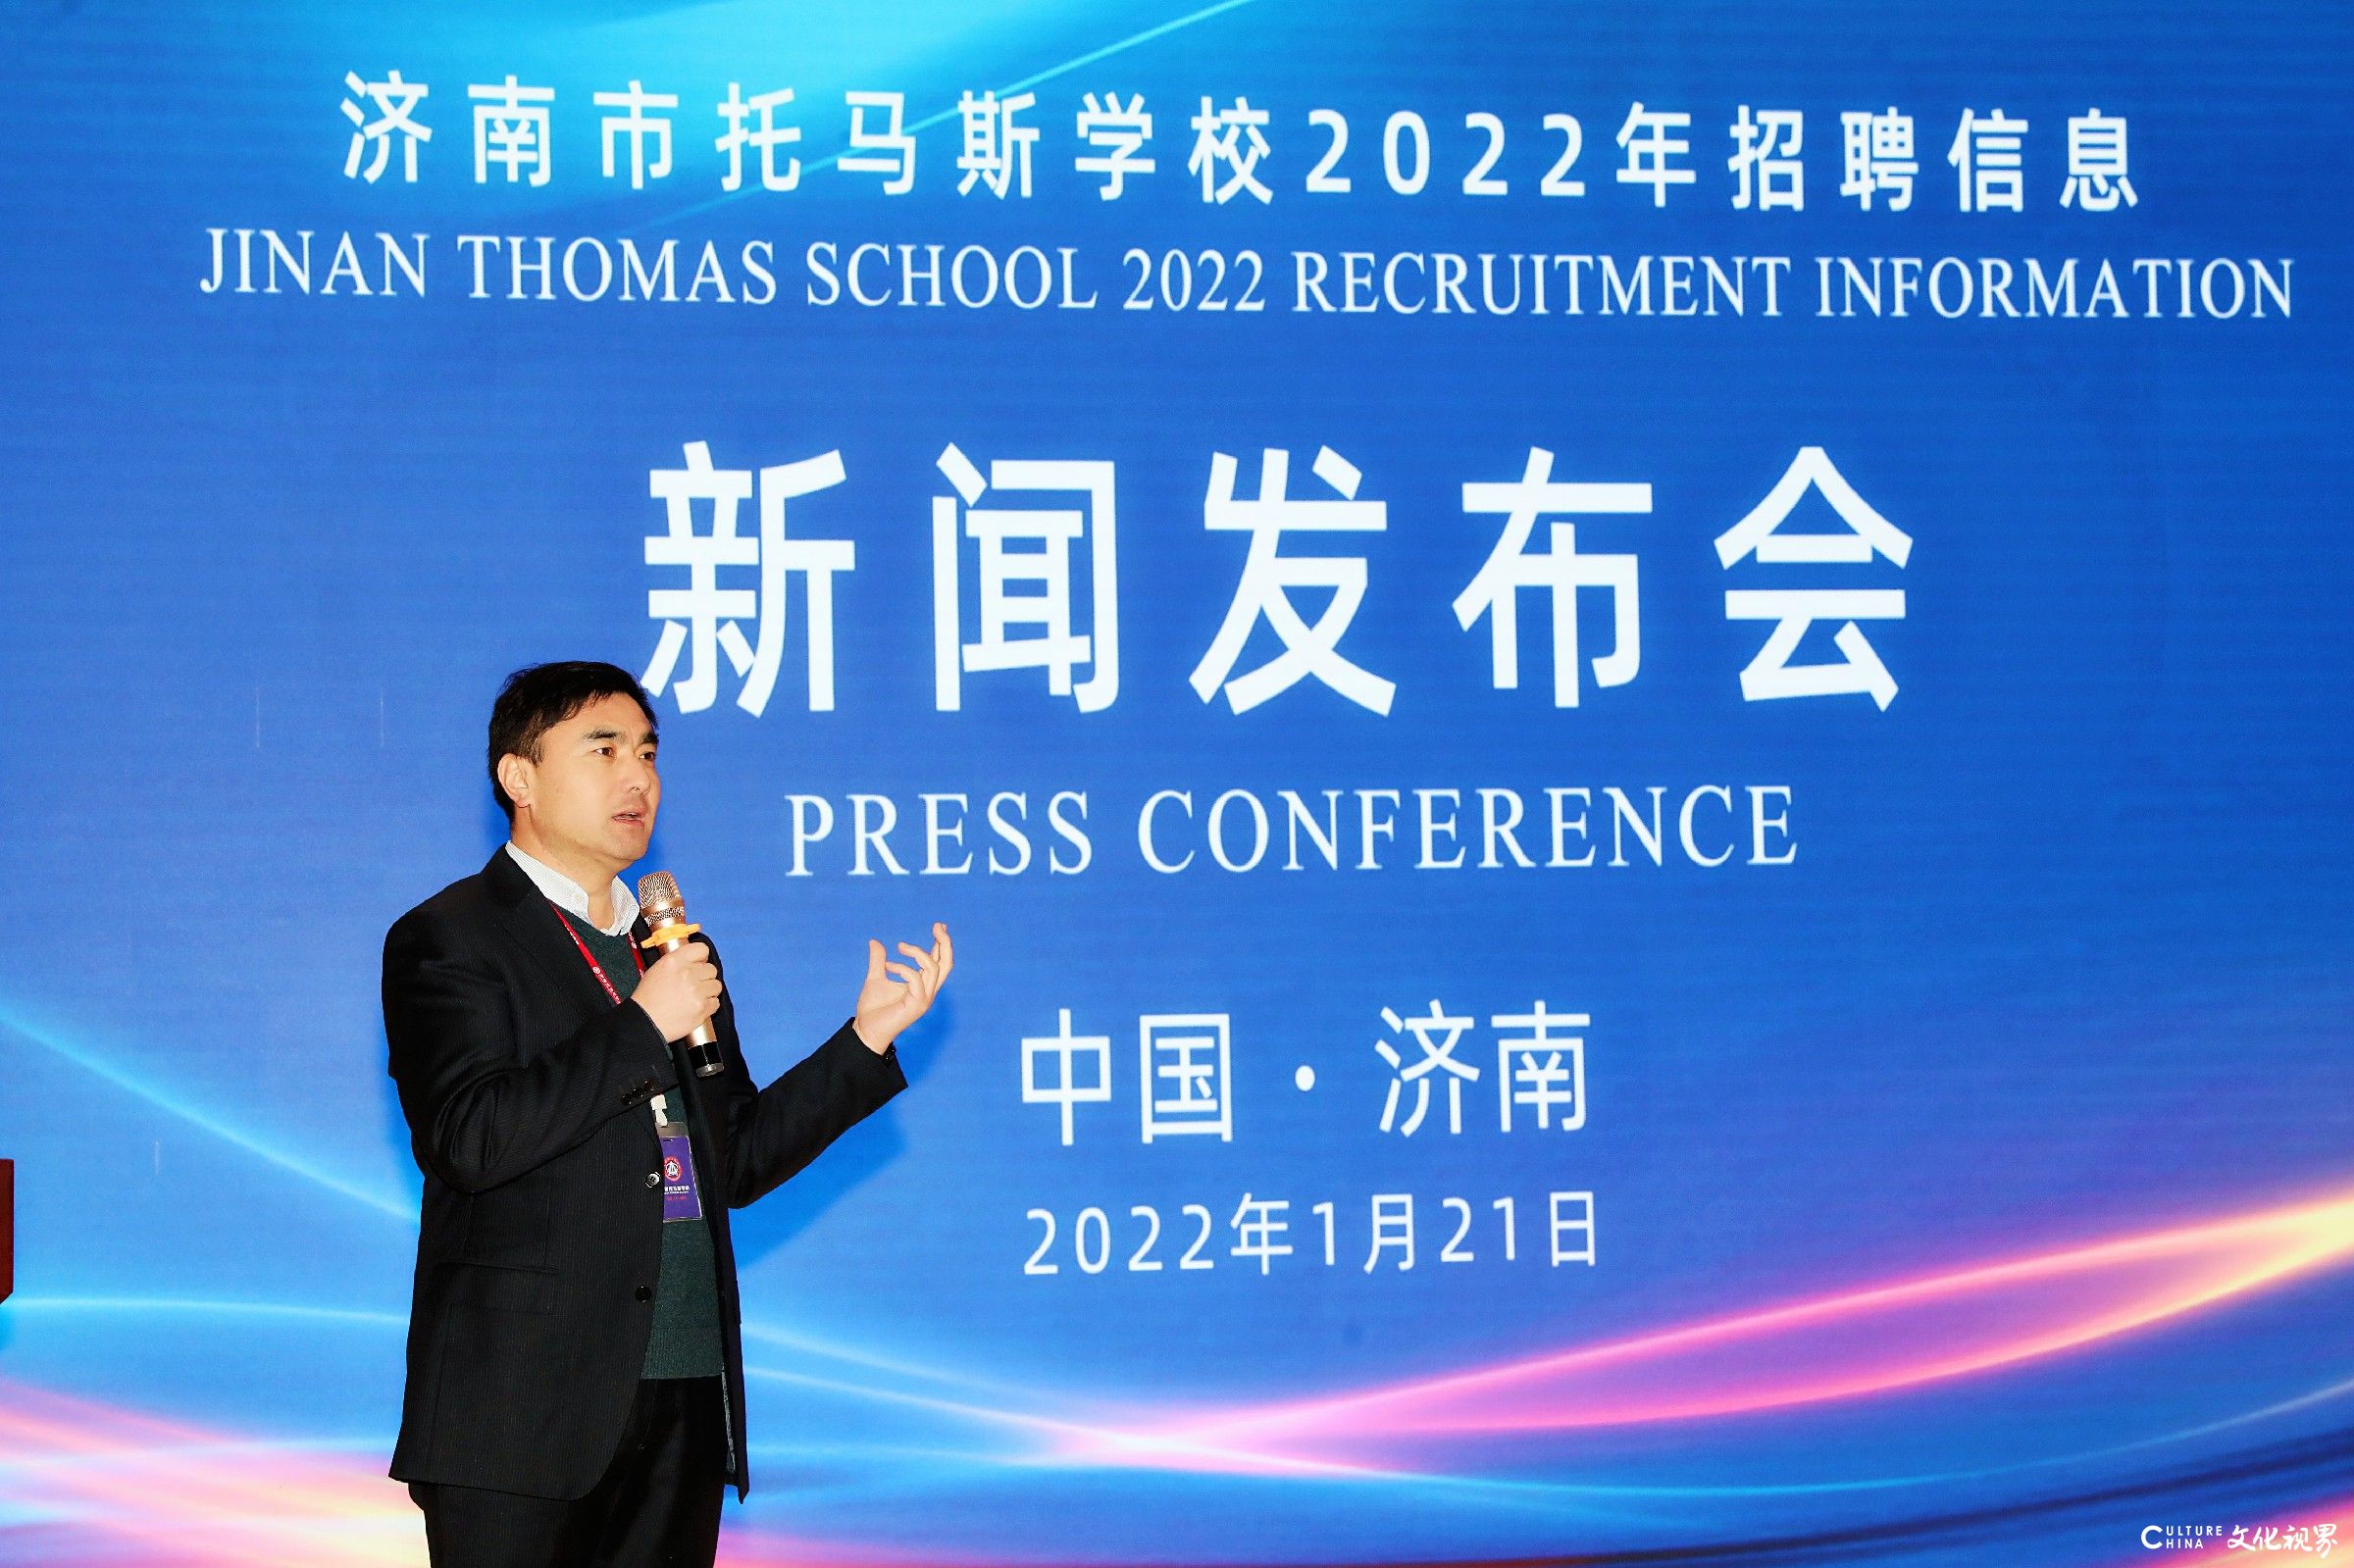 济南市托马斯学校发布2022年招聘计划：招聘中方教职工73人，年薪9一50万元不等